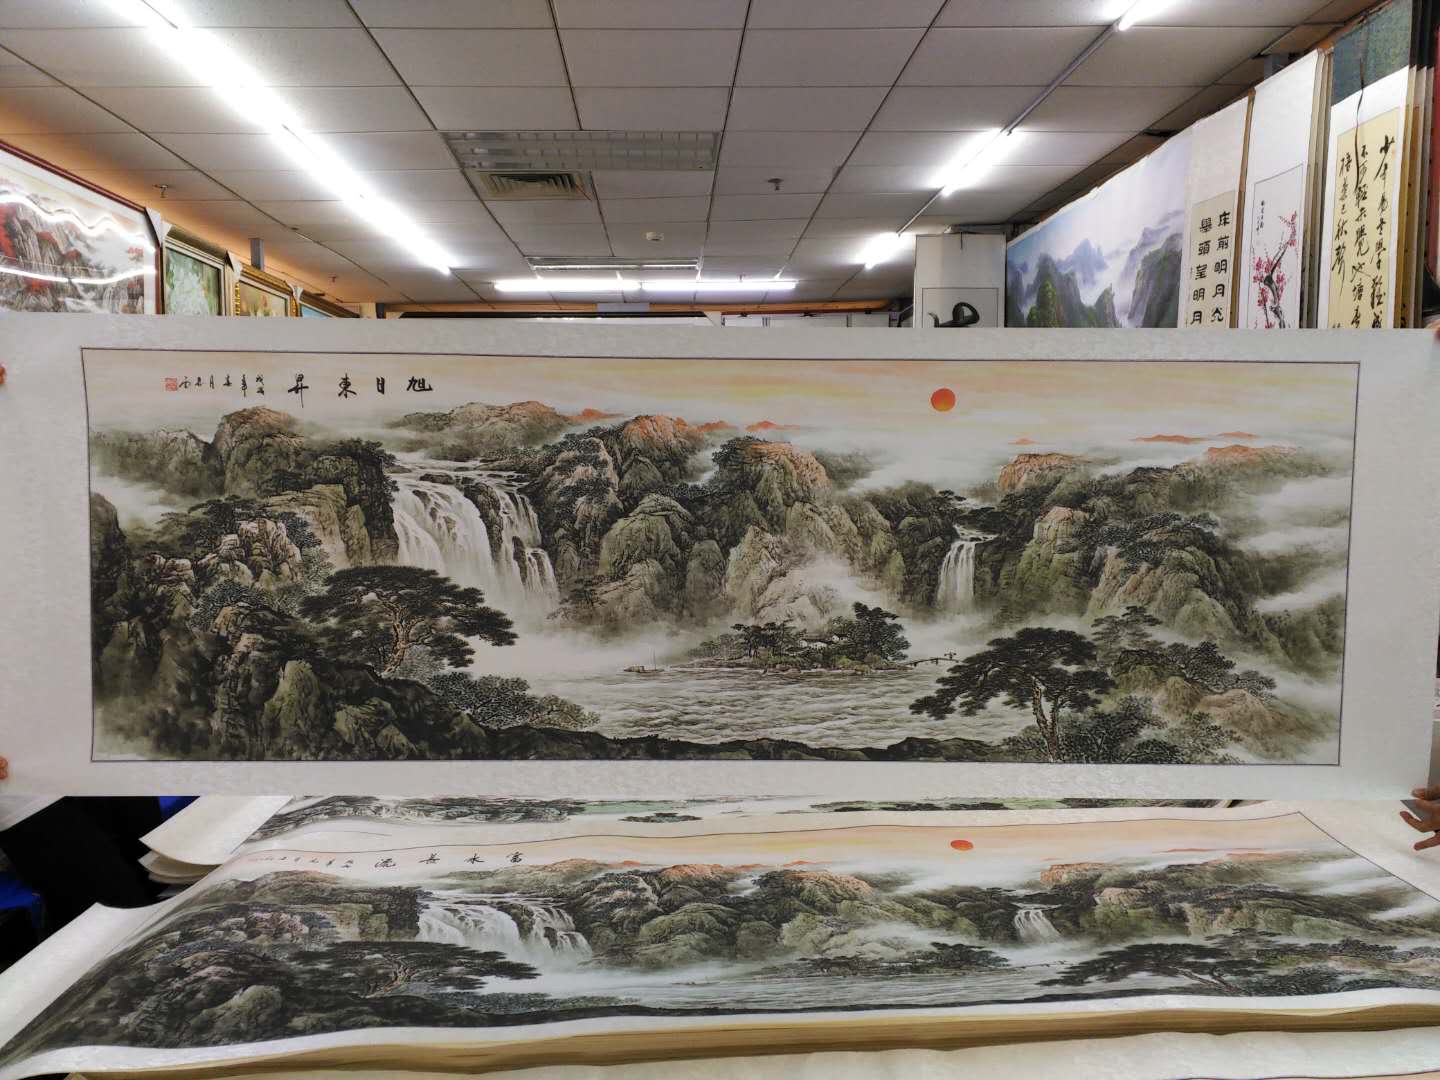 80x240水印印刷黑白水墨源远流长山水国画中国画传统装饰画细节图